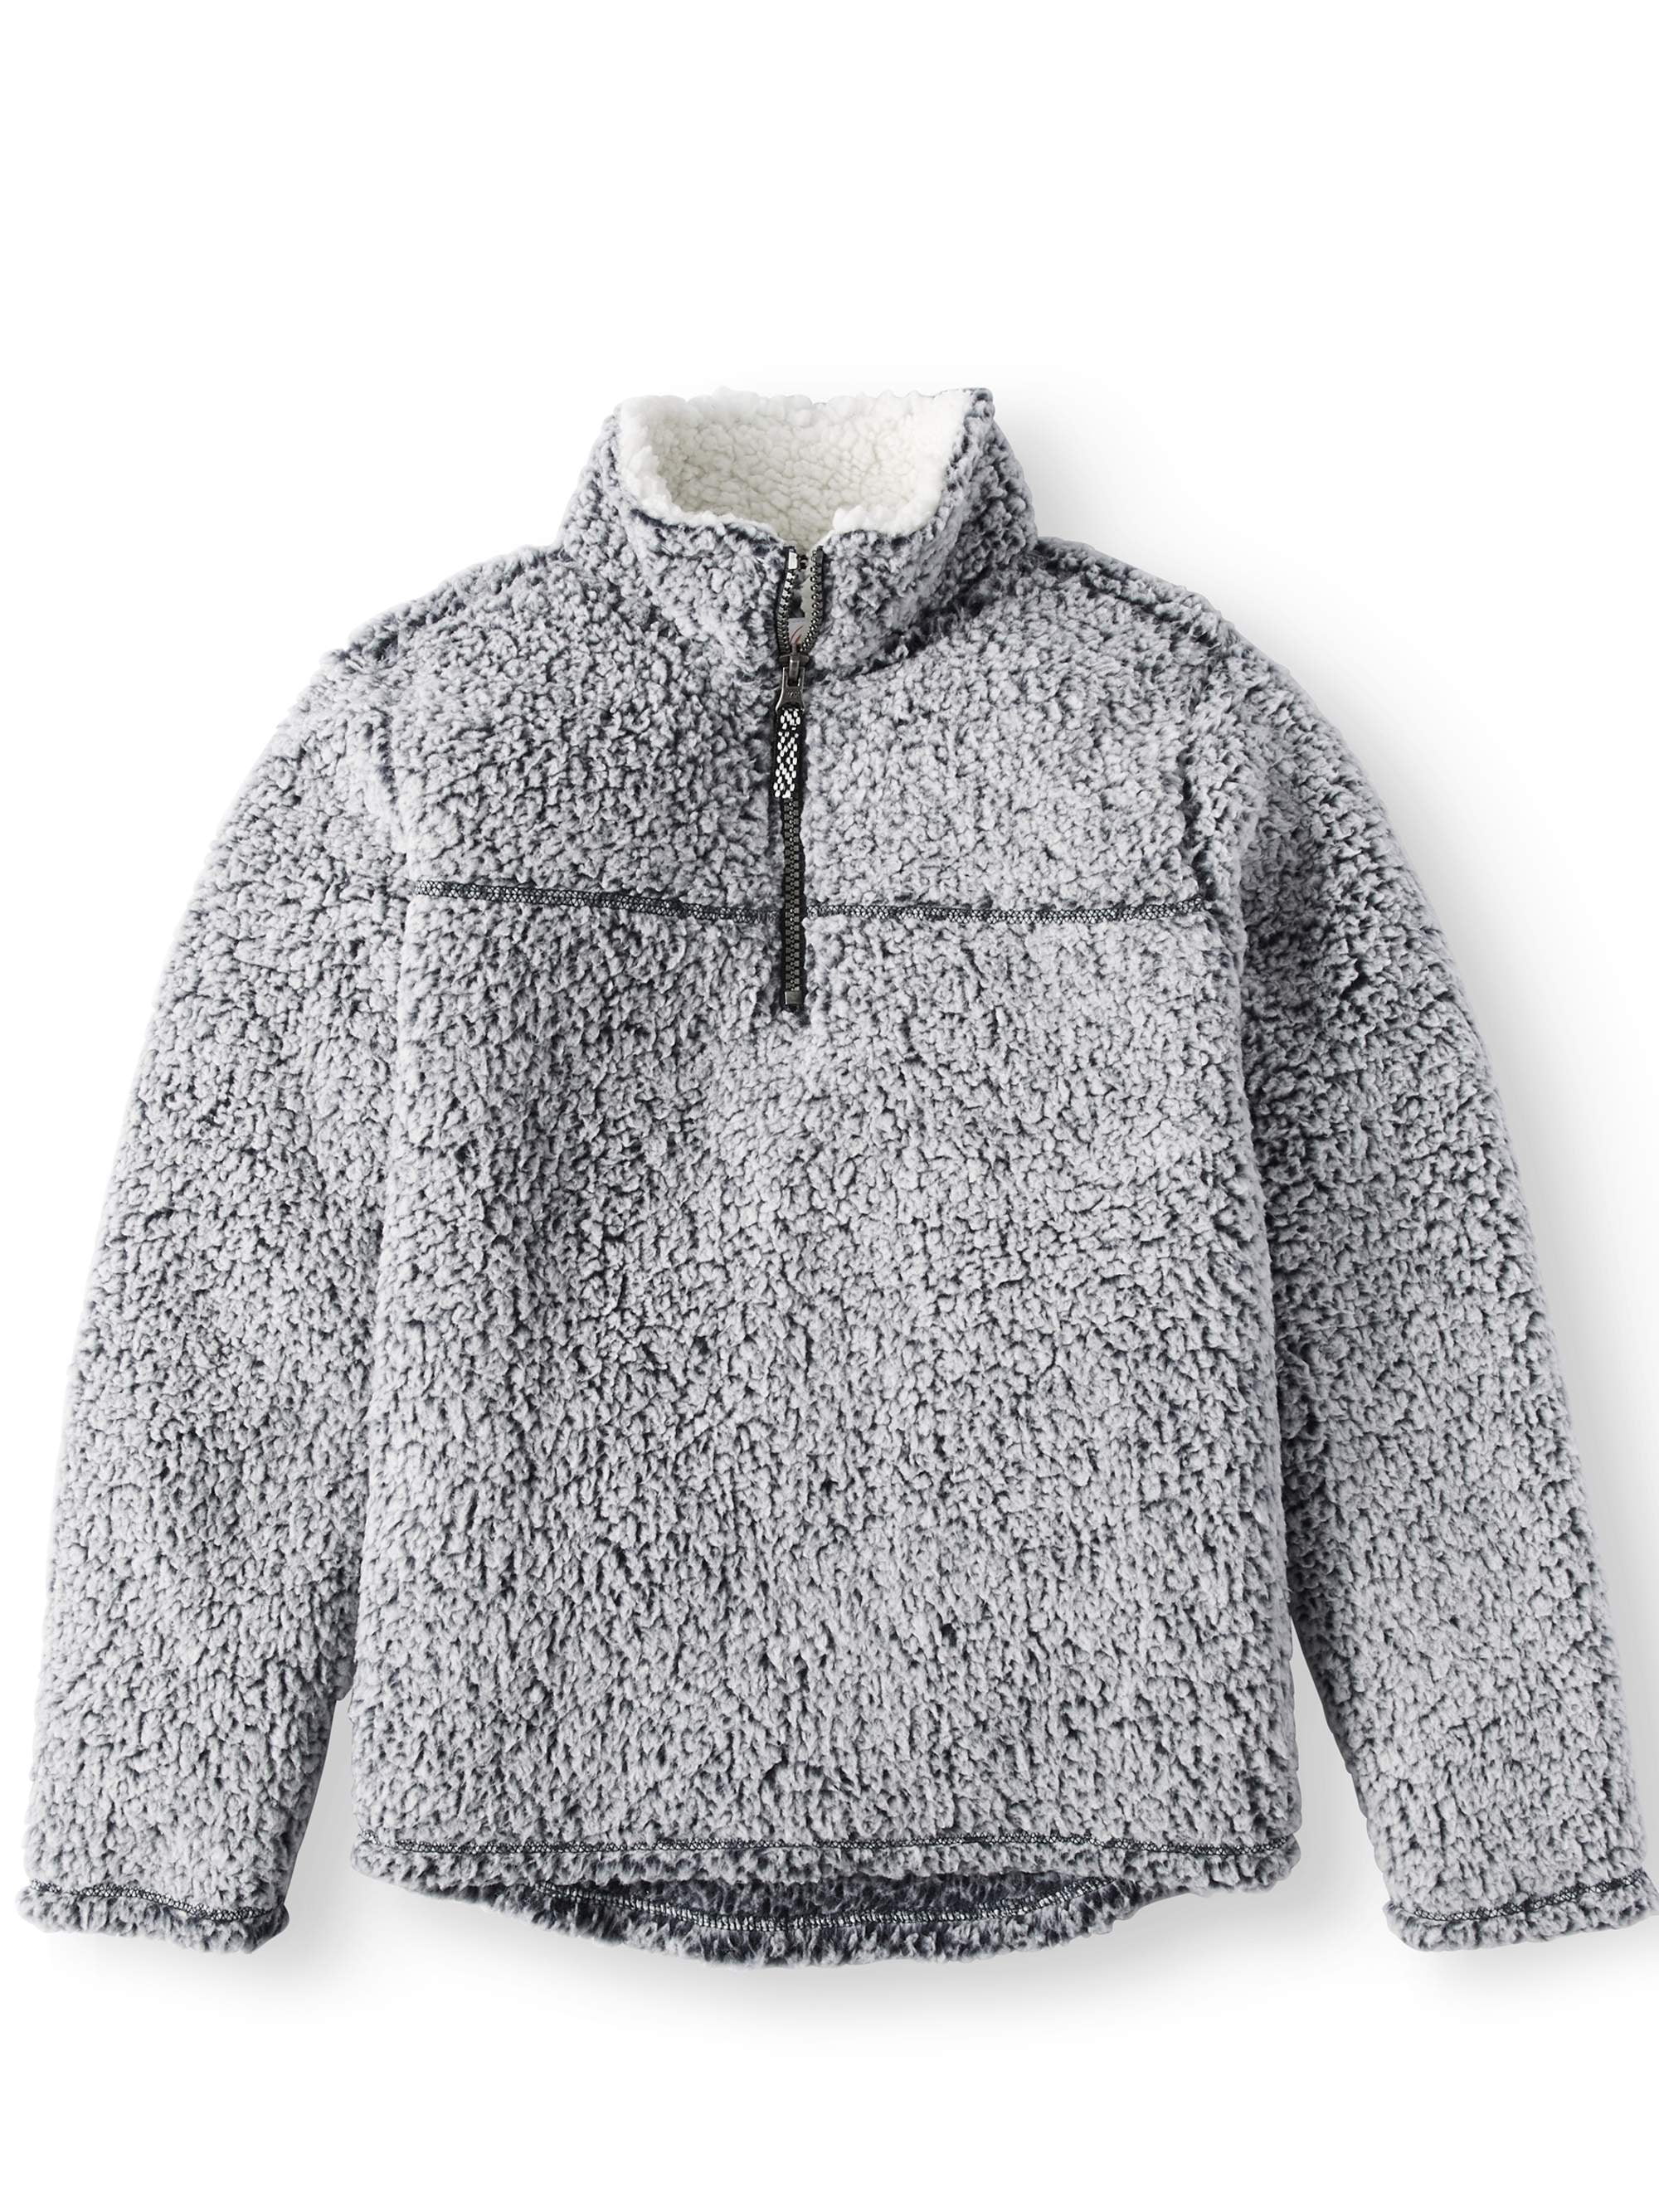 BYWX Women Long Sleeve Sherpa Fleece 1/4 Zip Pullover Outwear Sweatshirt